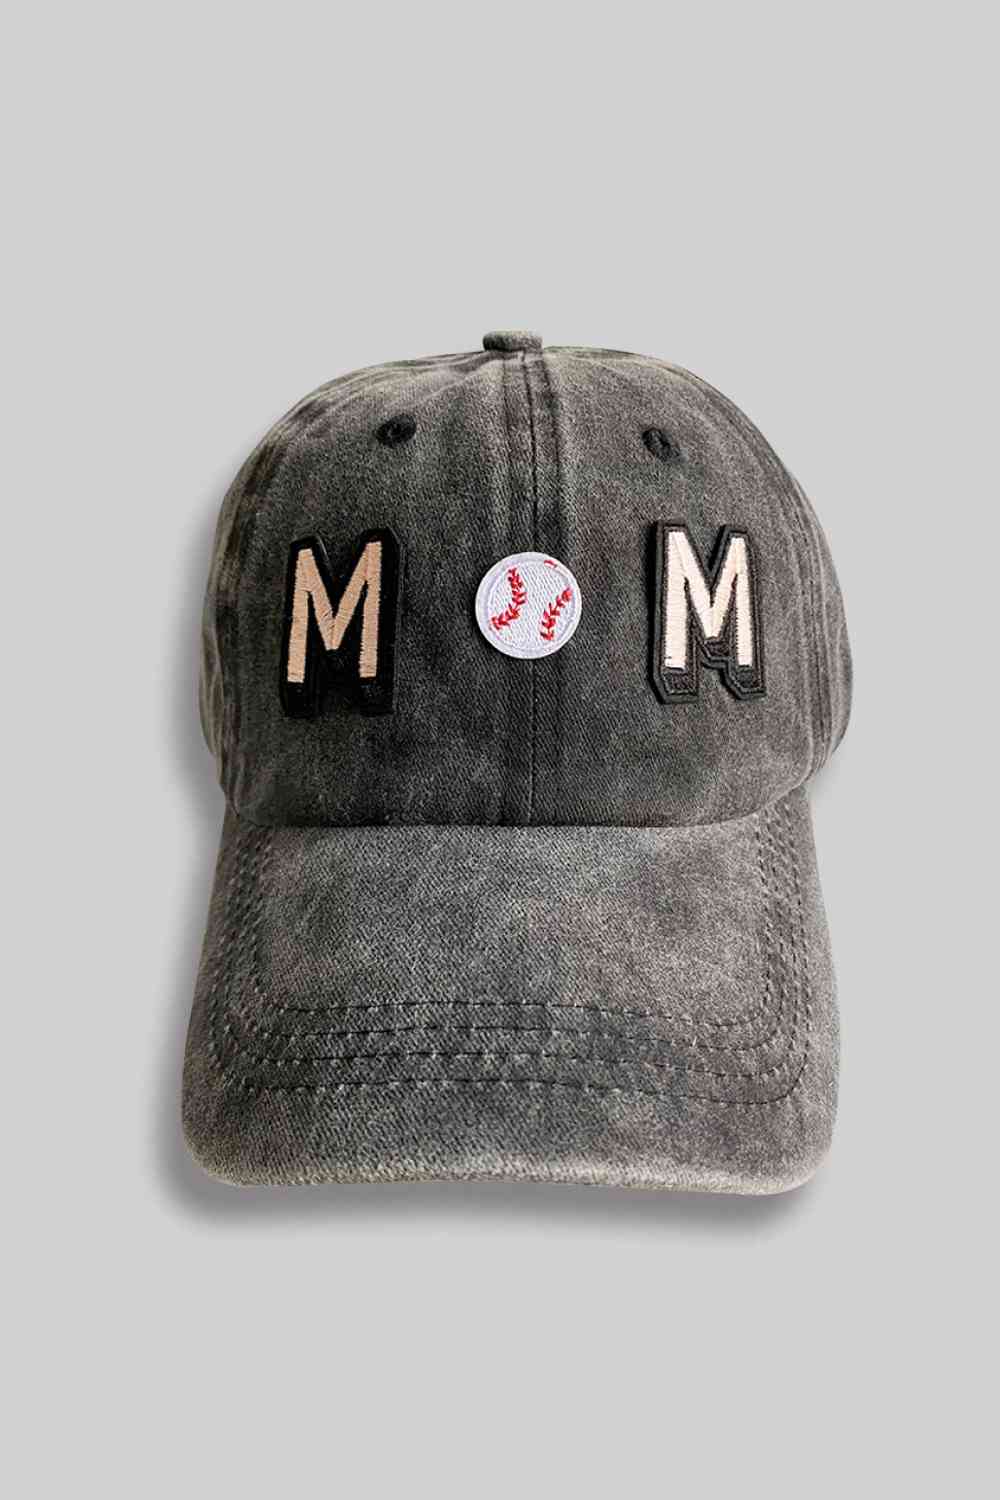 "MOM" Baseball Cap